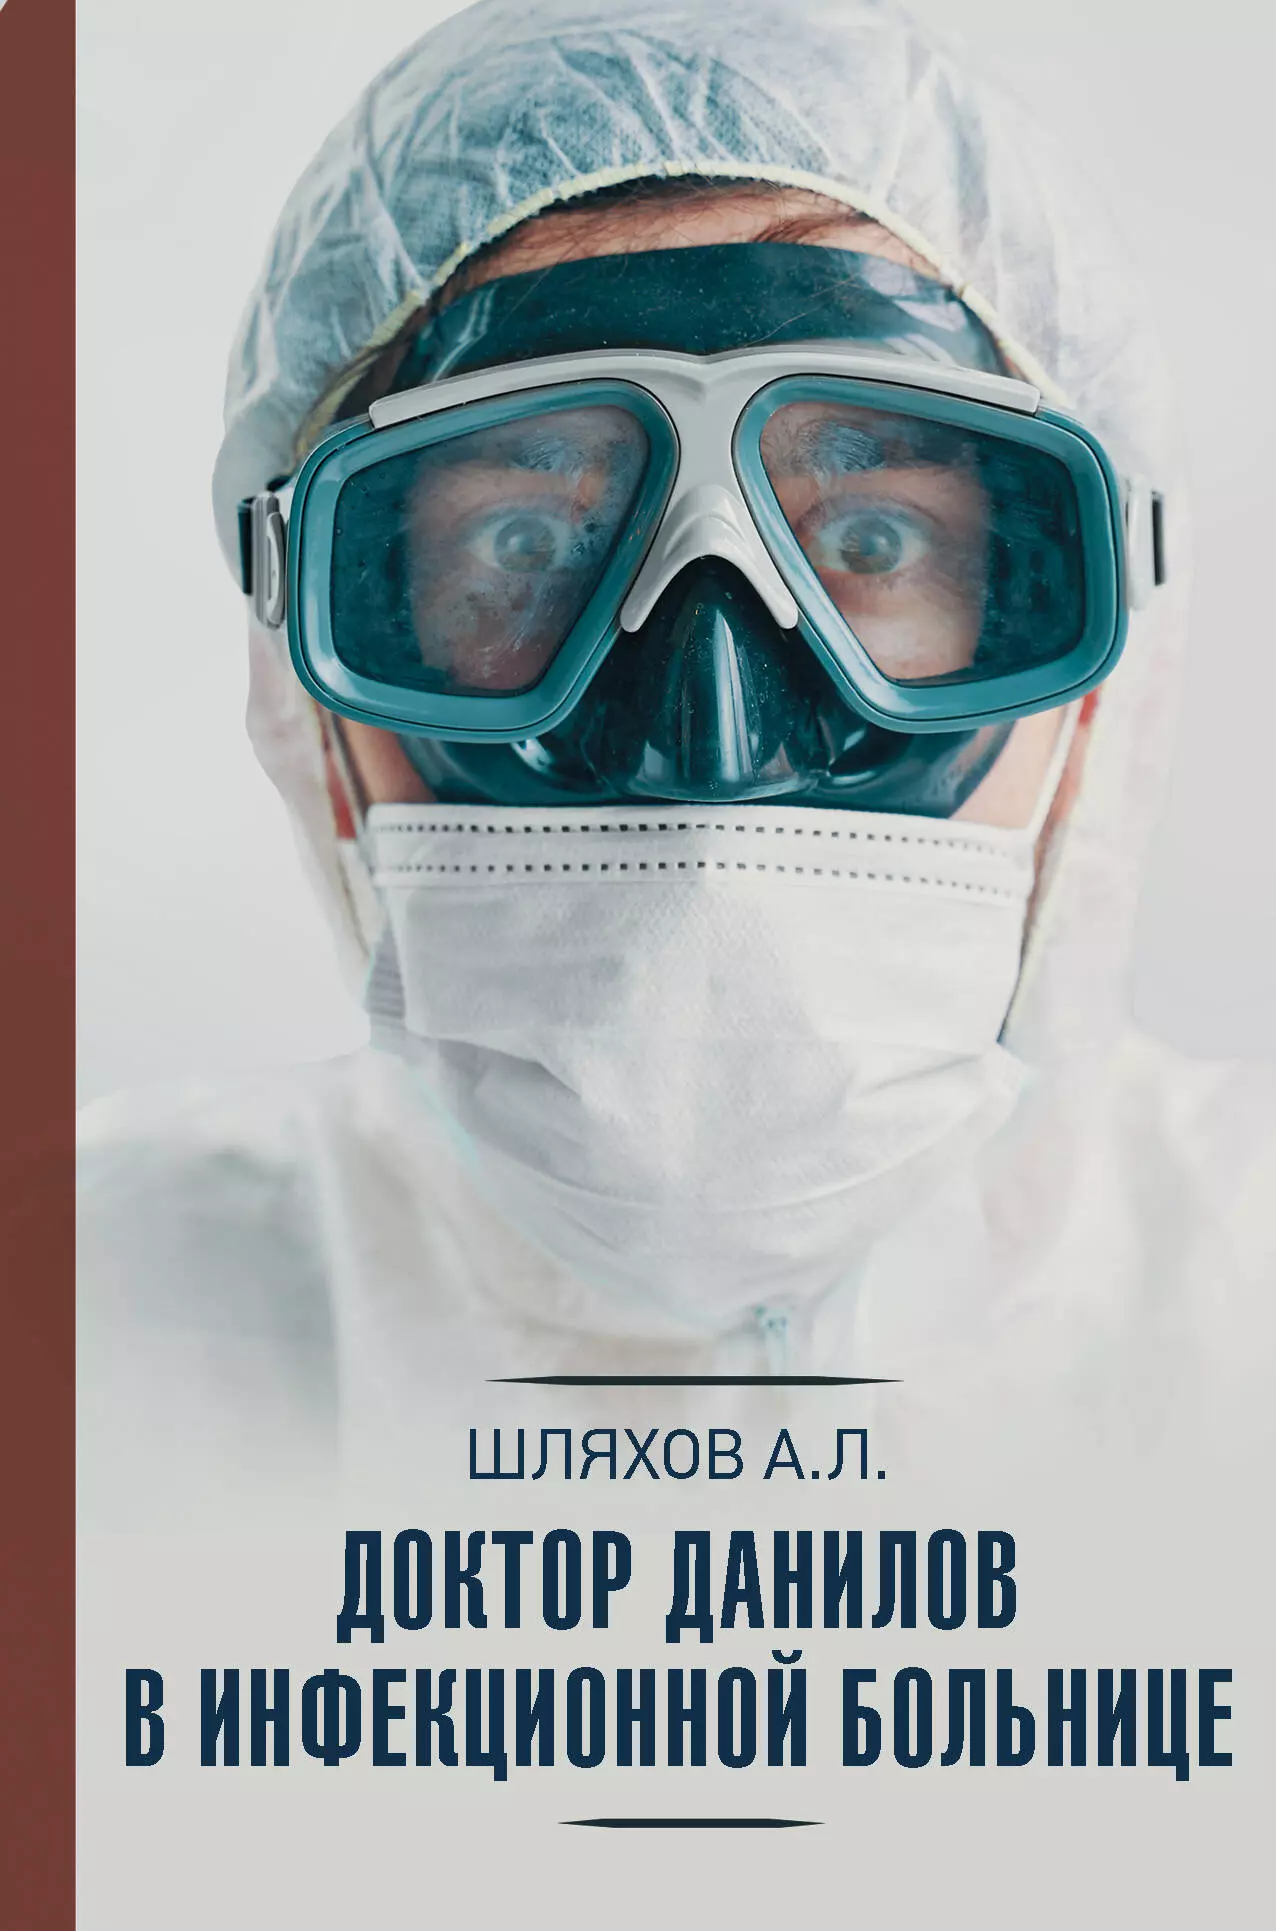 Шляхов Андрей Левонович - Доктор Данилов в инфекционной больнице